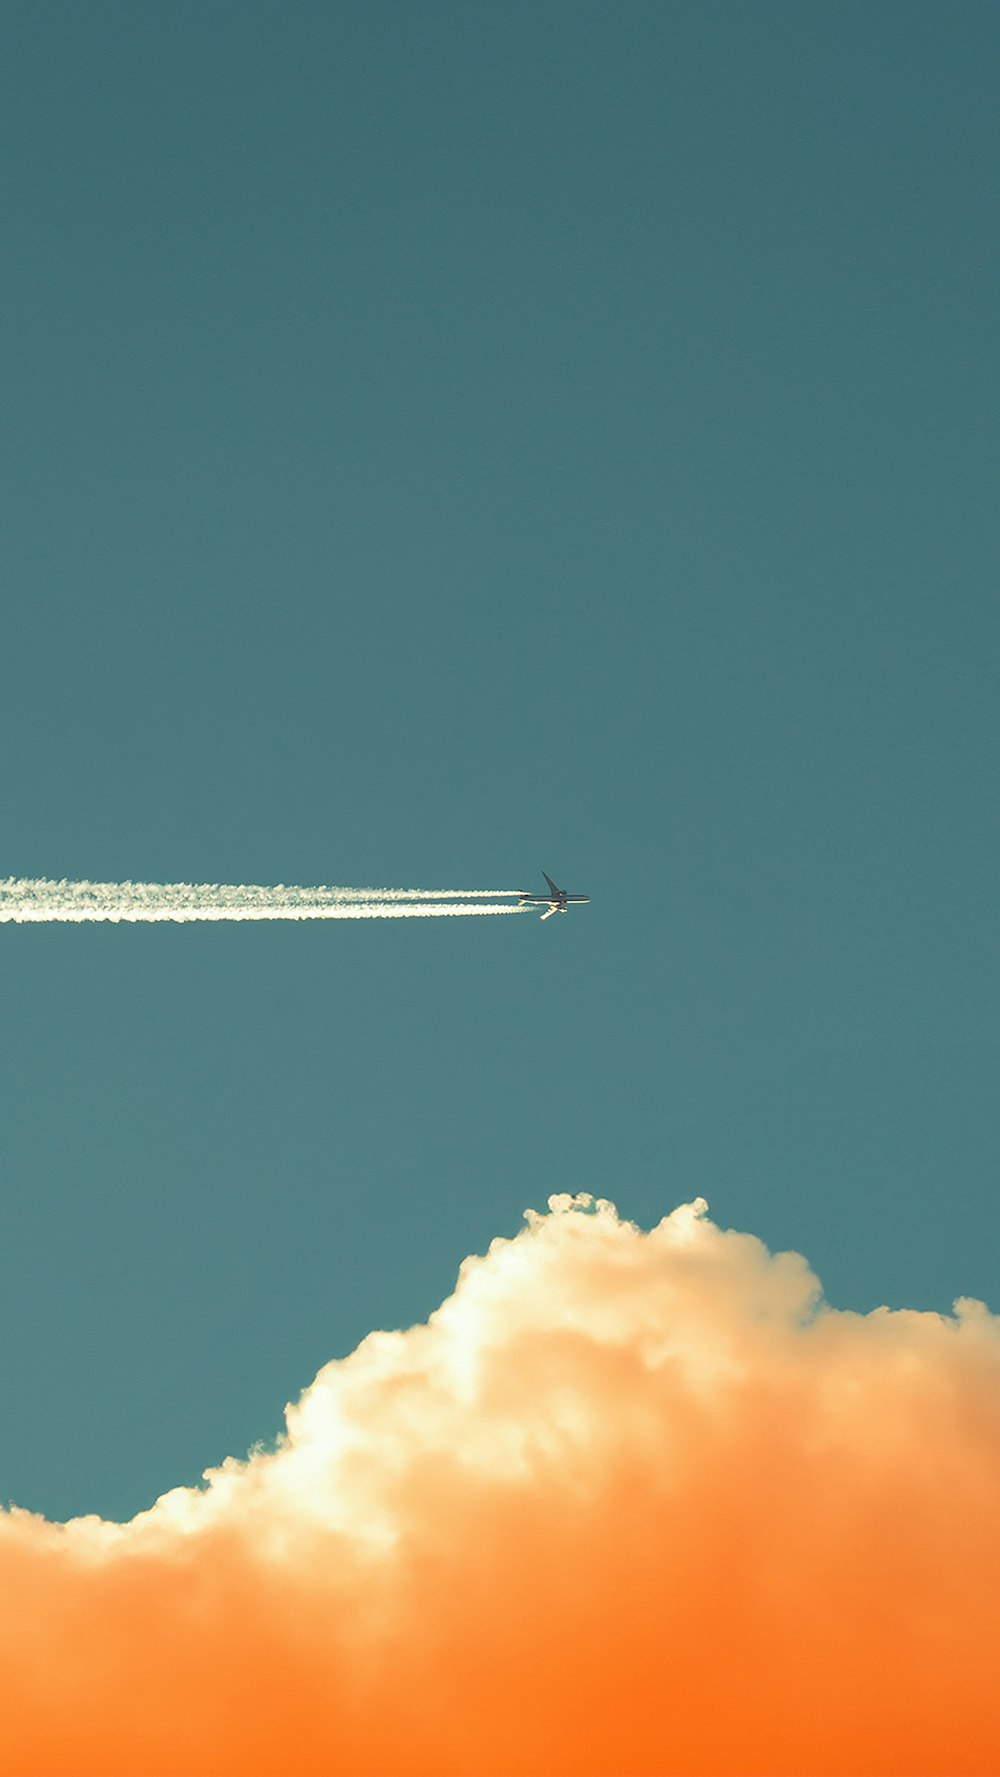 Un avión vuela en el cielo con un rastro de humo detrás de él